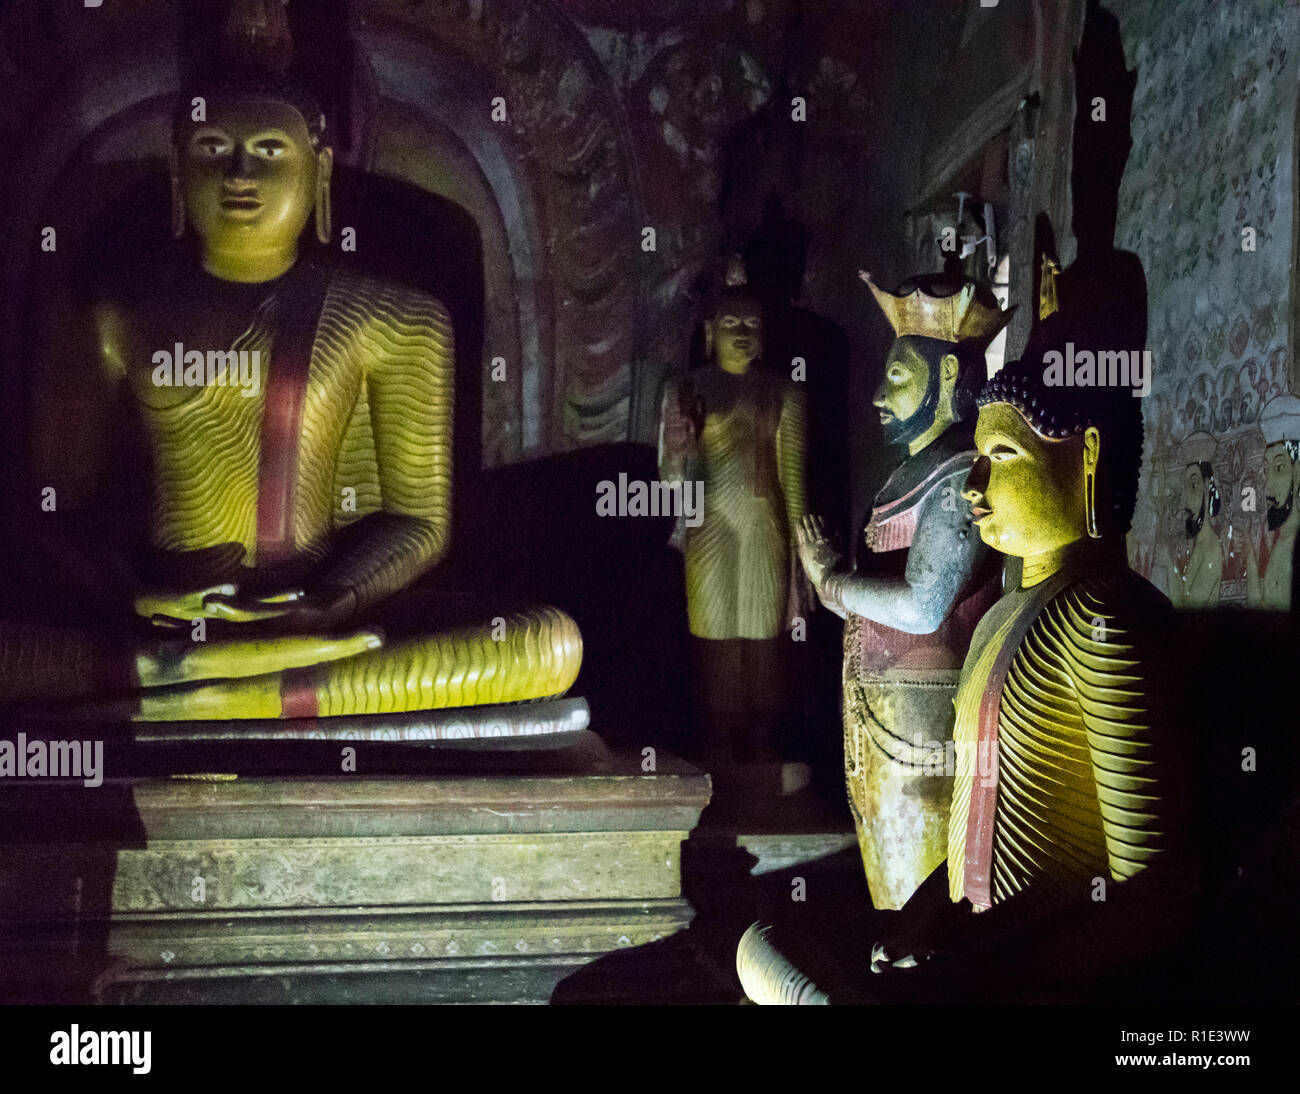 Dambulla Cave Temple, Sri Lanka. Errichtet aus Dankbarkeit: Neben Buddhas Statue die von Kirti Sri Rajasinha, der als König von Kandy den Buddhismus in Sri Lanka im 18th. Jahrhundert wiederbelebt hatte Stockfoto